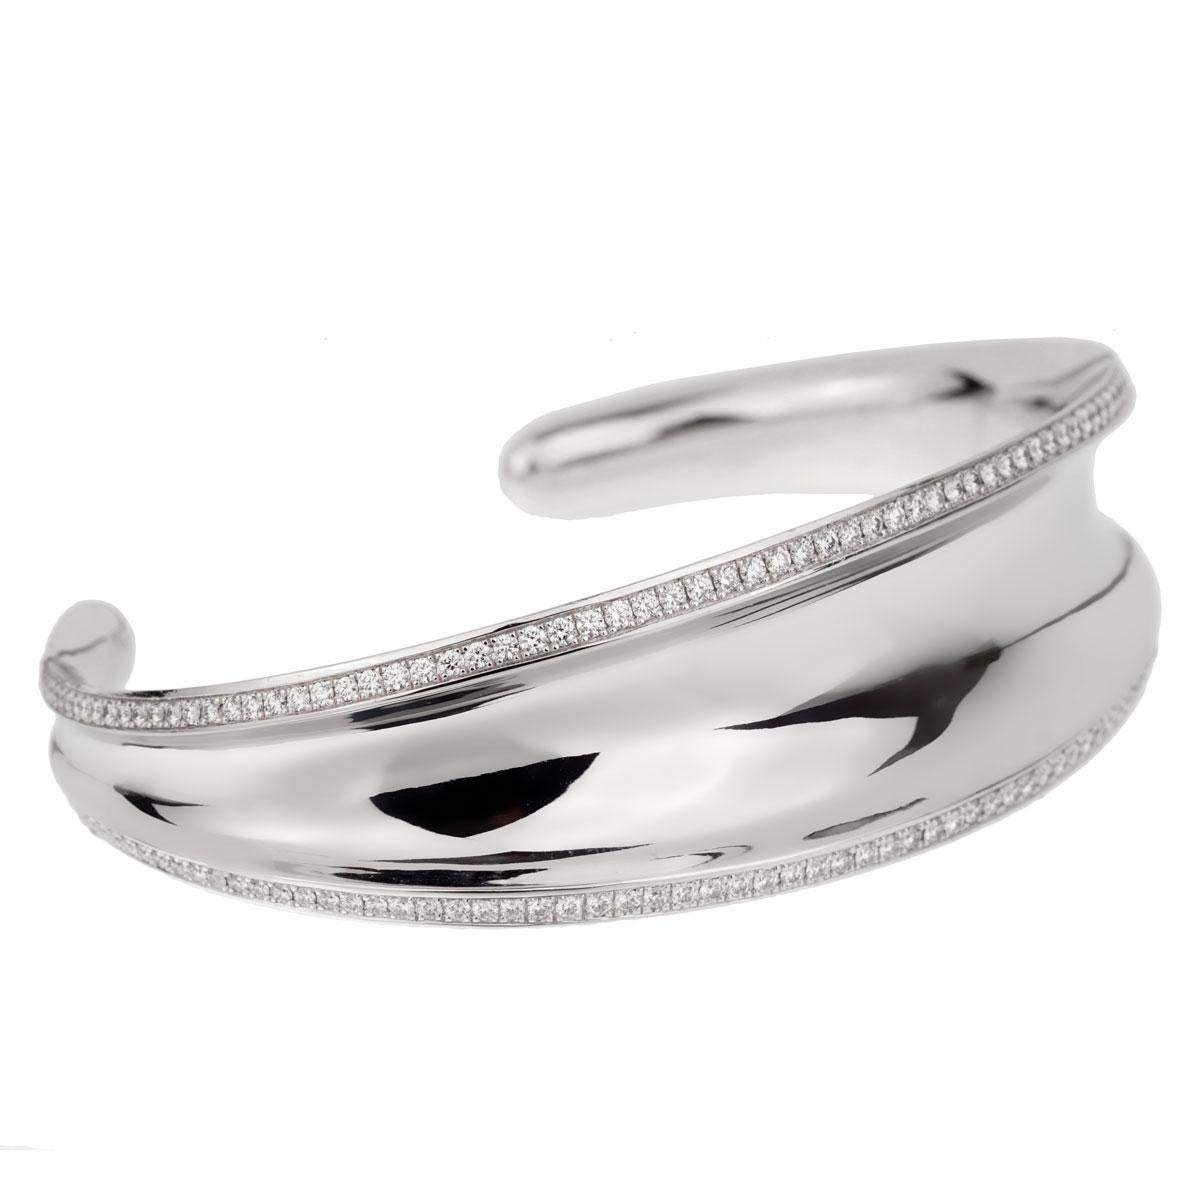 Un fabuleux bracelet manchette en diamants Chopard de la collection Imperiale. Le bracelet est bordé de 240 des plus beaux diamants ronds de taille brillant en or blanc 18k étincelant. Ce bracelet bangle Chopard s'adapte à un poignet d'une longueur